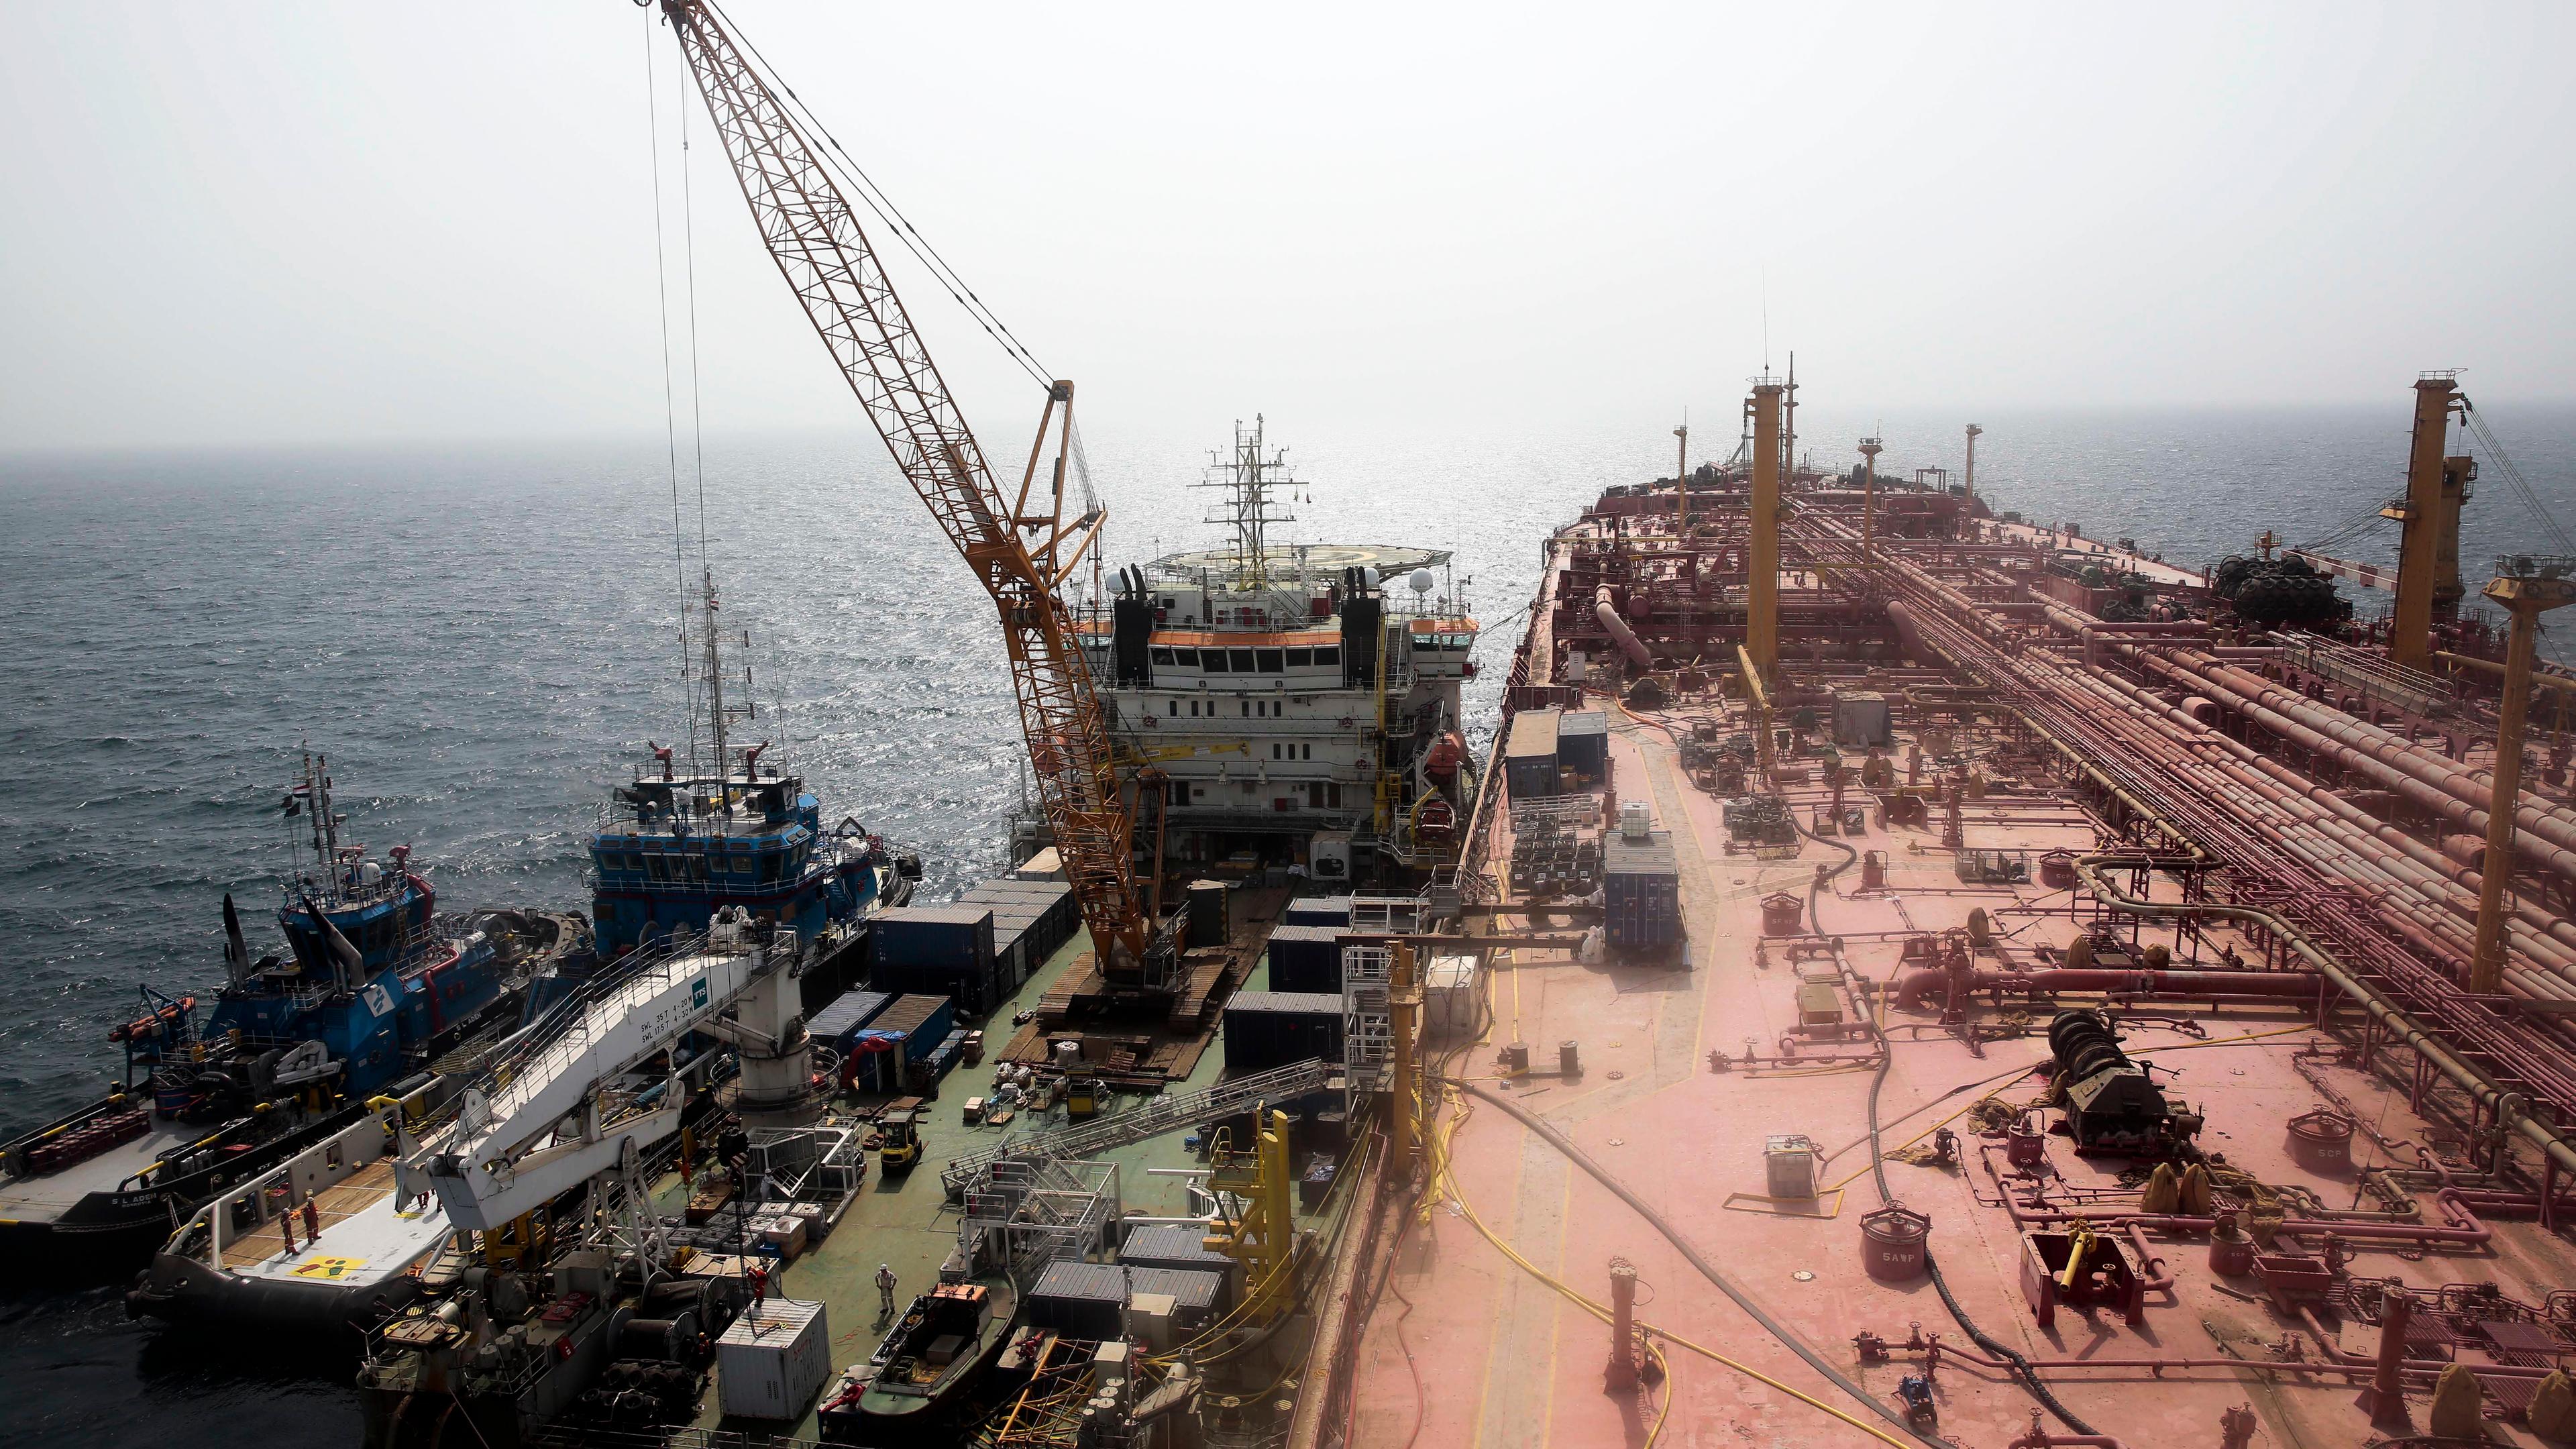 ARCHIV: Technische Schiffe stehen neben dem Öltanker "FSO Safer" vor der Küste Jemens.